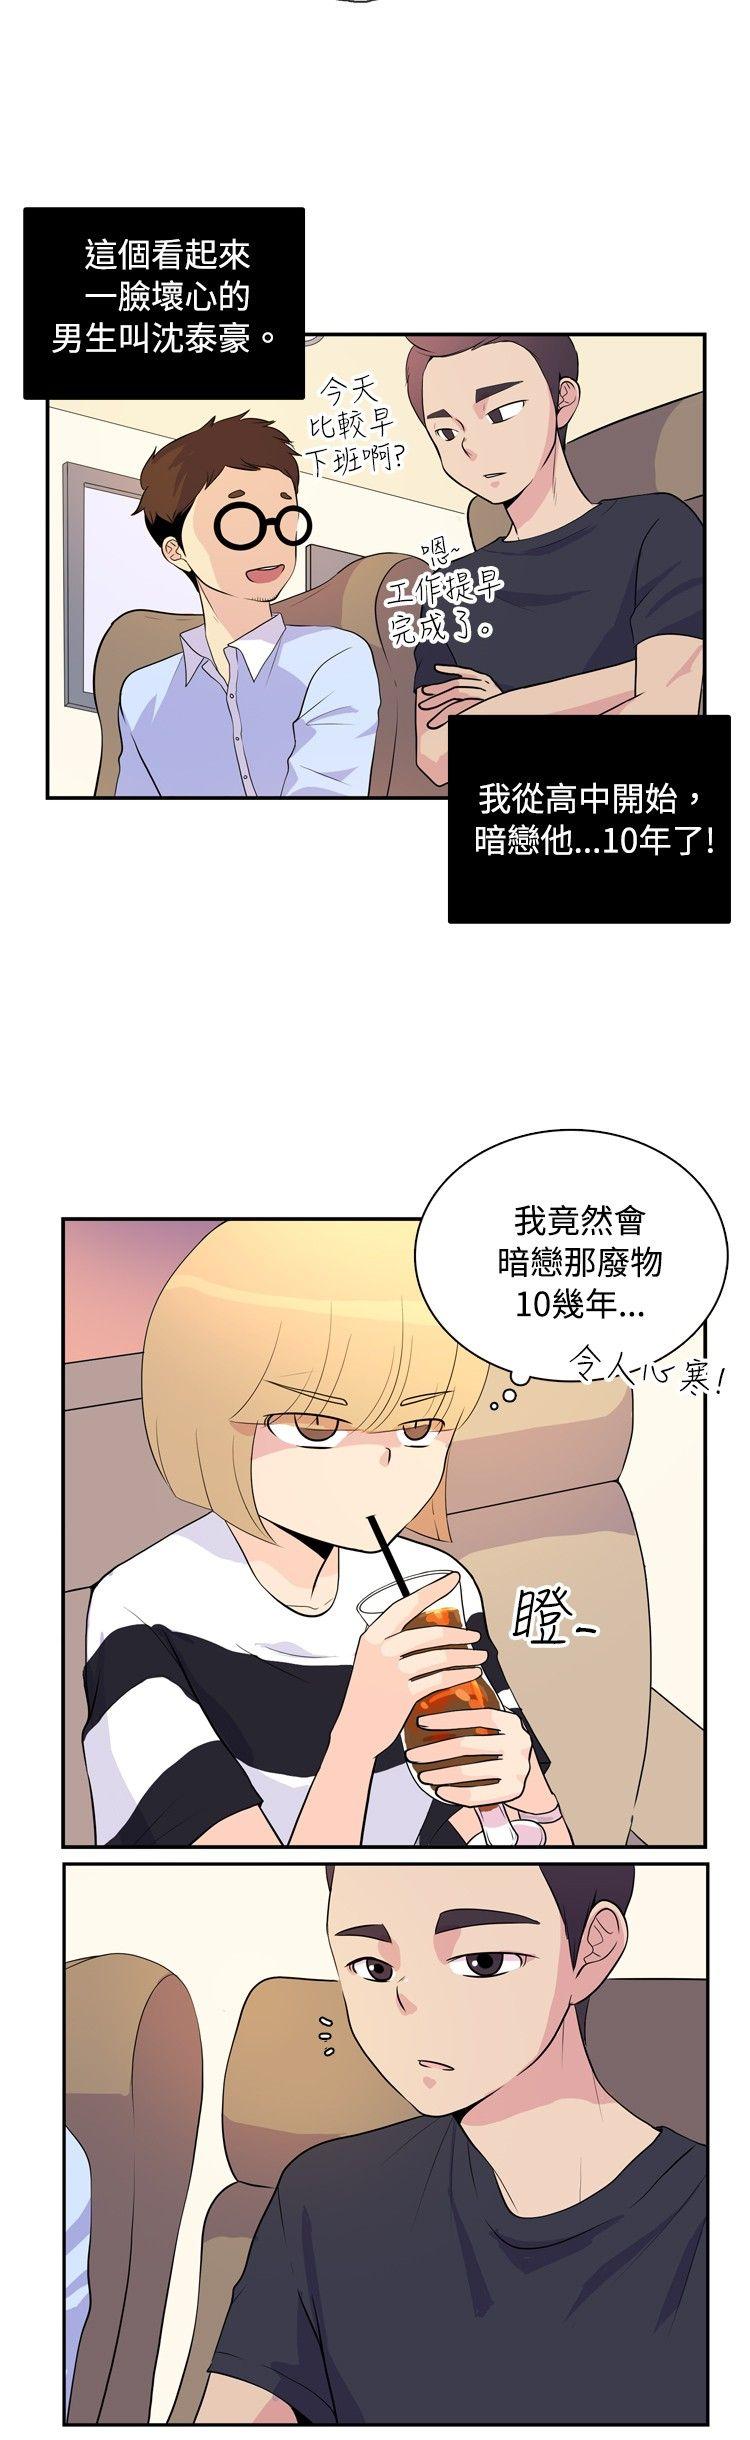 10人10色：初体验  洪氏-他与她的初恋（上篇） 漫画图片8.jpg